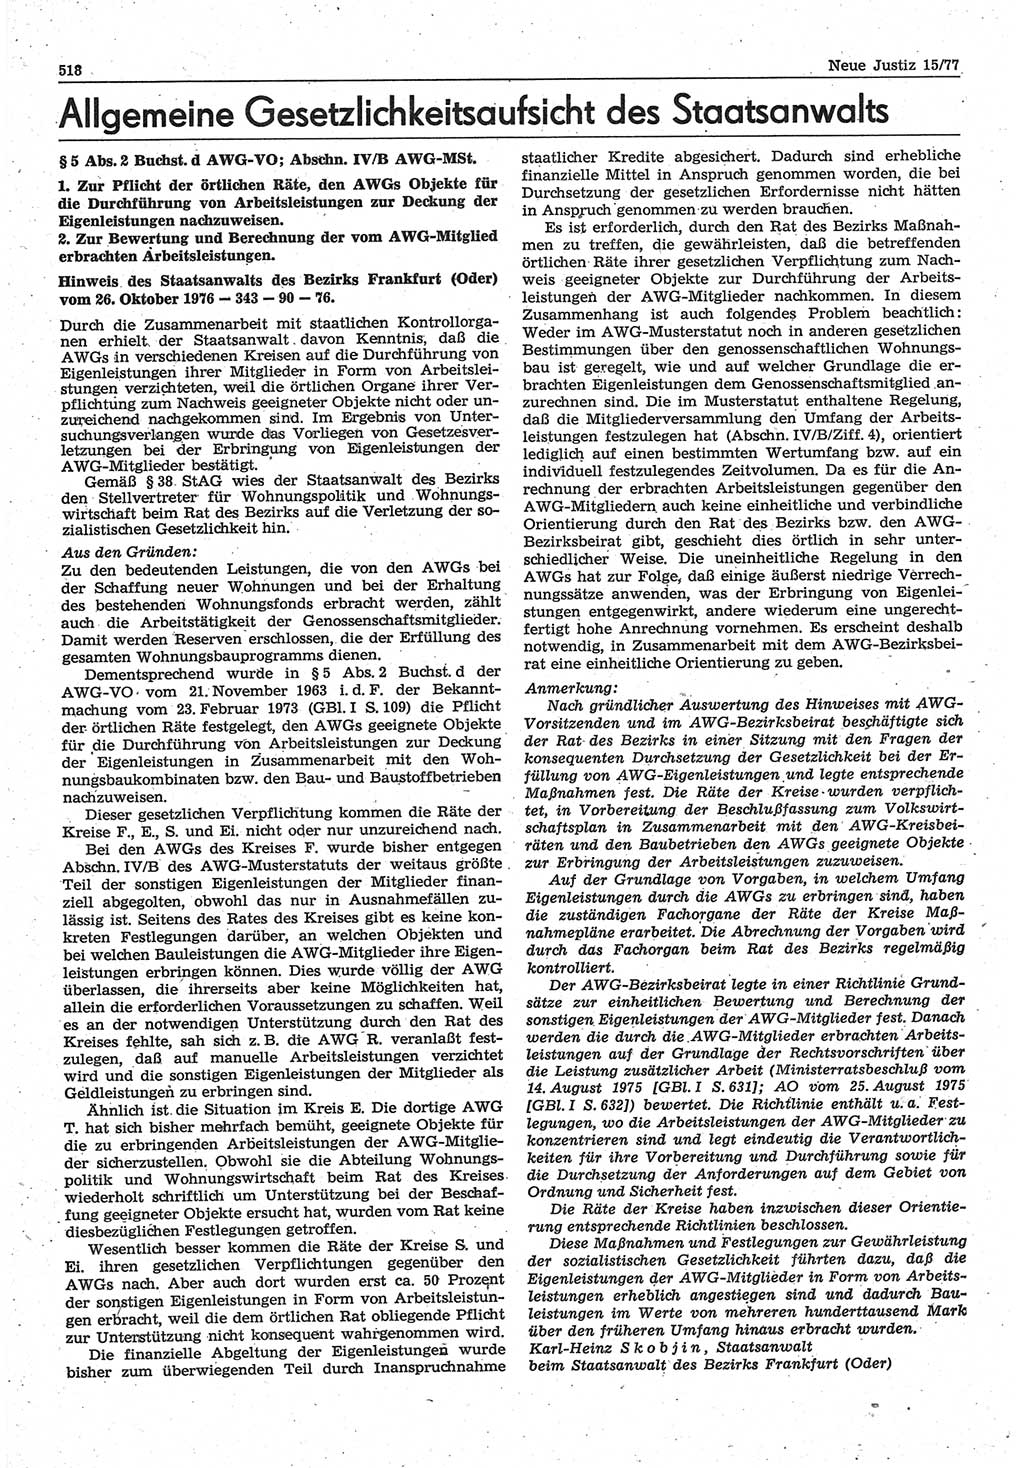 Neue Justiz (NJ), Zeitschrift für Recht und Rechtswissenschaft-Zeitschrift, sozialistisches Recht und Gesetzlichkeit, 31. Jahrgang 1977, Seite 518 (NJ DDR 1977, S. 518)